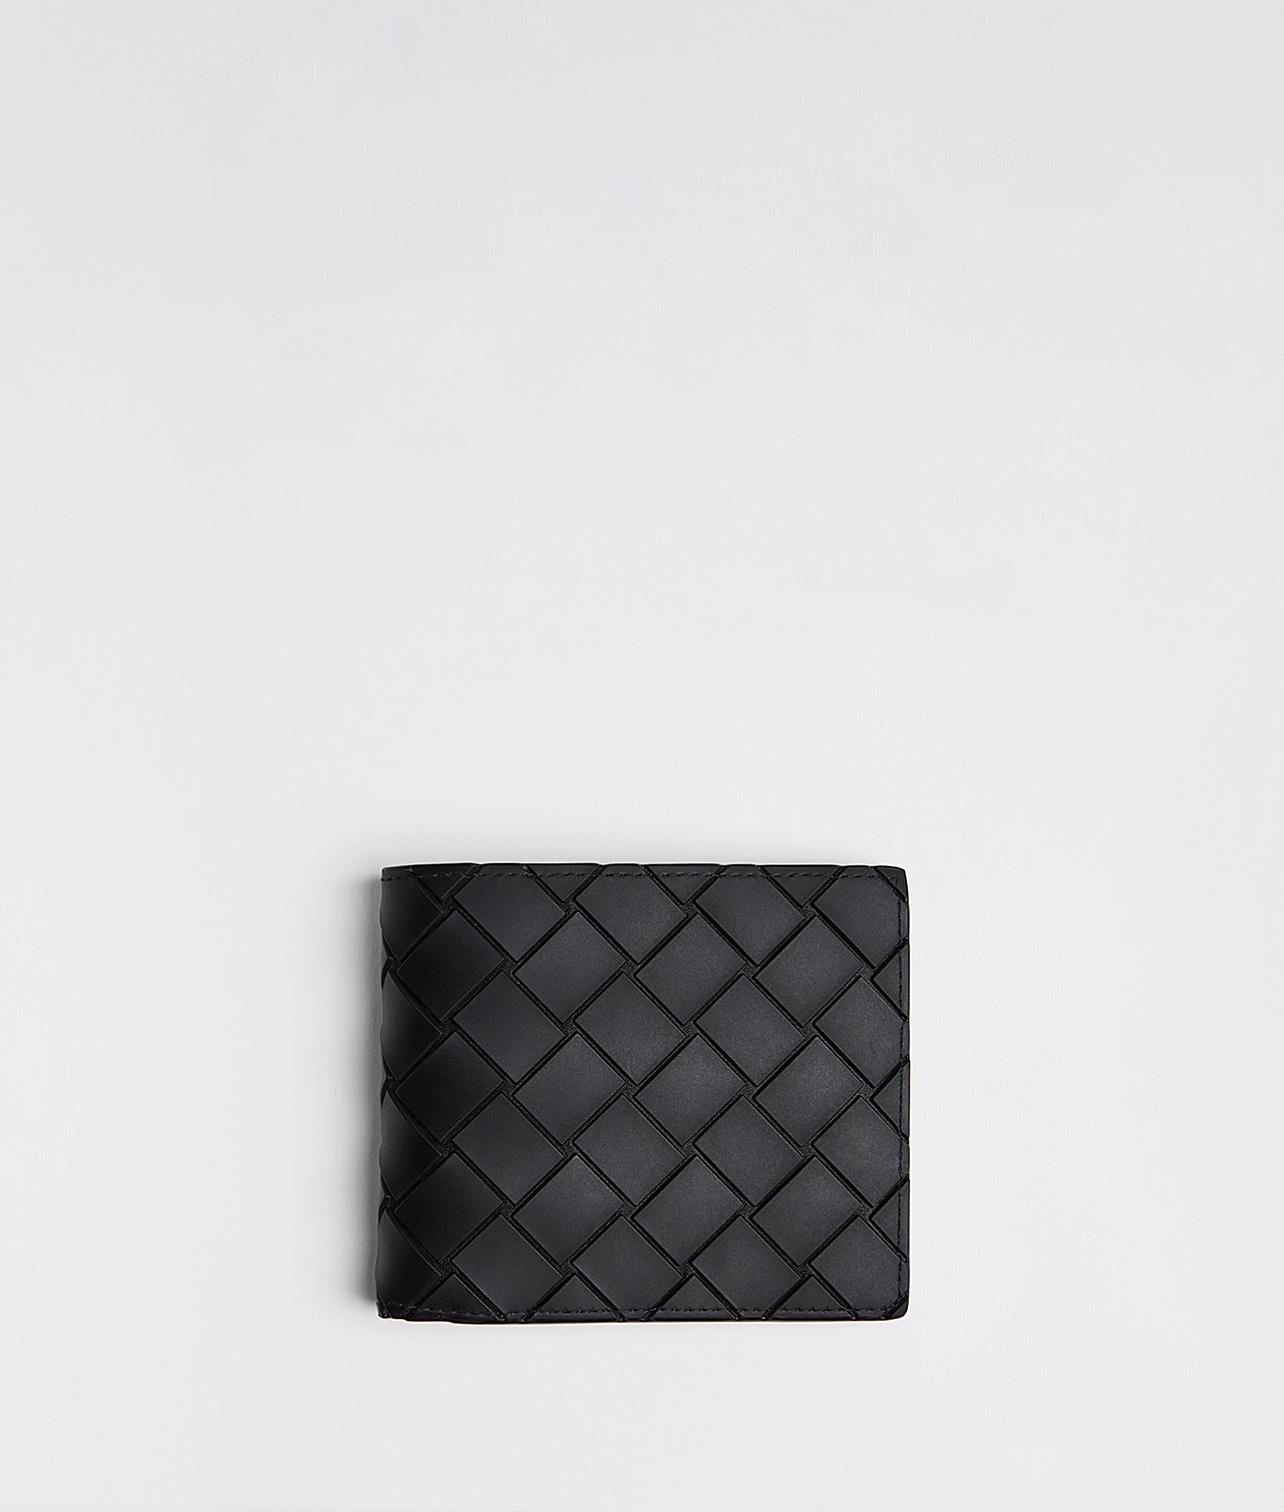 Bottega Veneta Leather Bi-fold Wallet in Nero (Black) for Men - Lyst